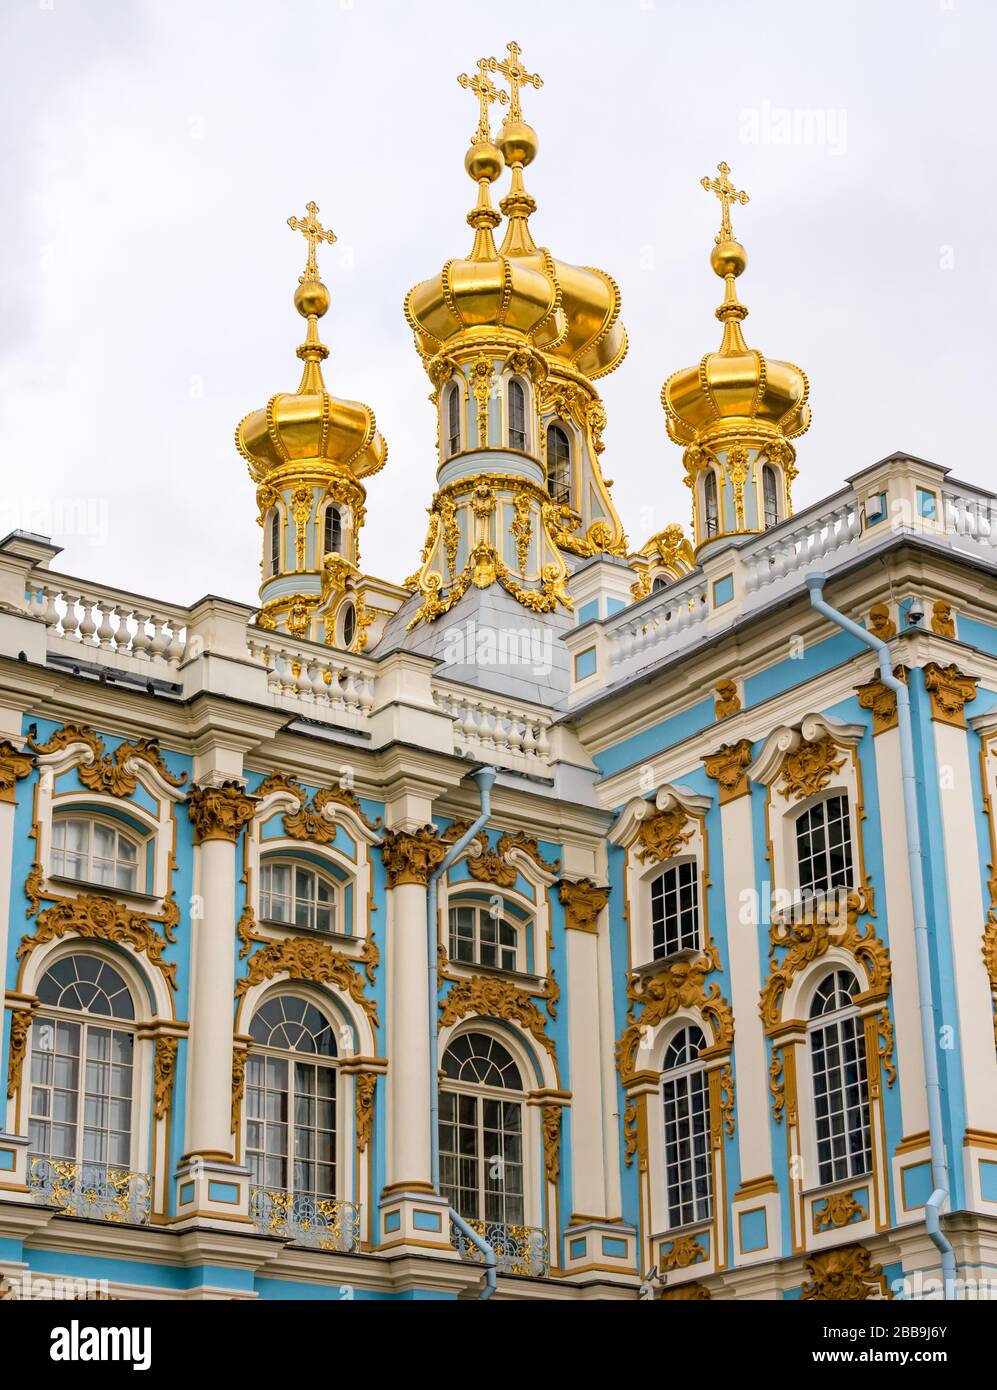 Goldene Zwiebelkuppeln von Katharinenpalast, Dorf Tsars, Tsarskoe Selo, Puschkin, Russische Föderation Stockfoto